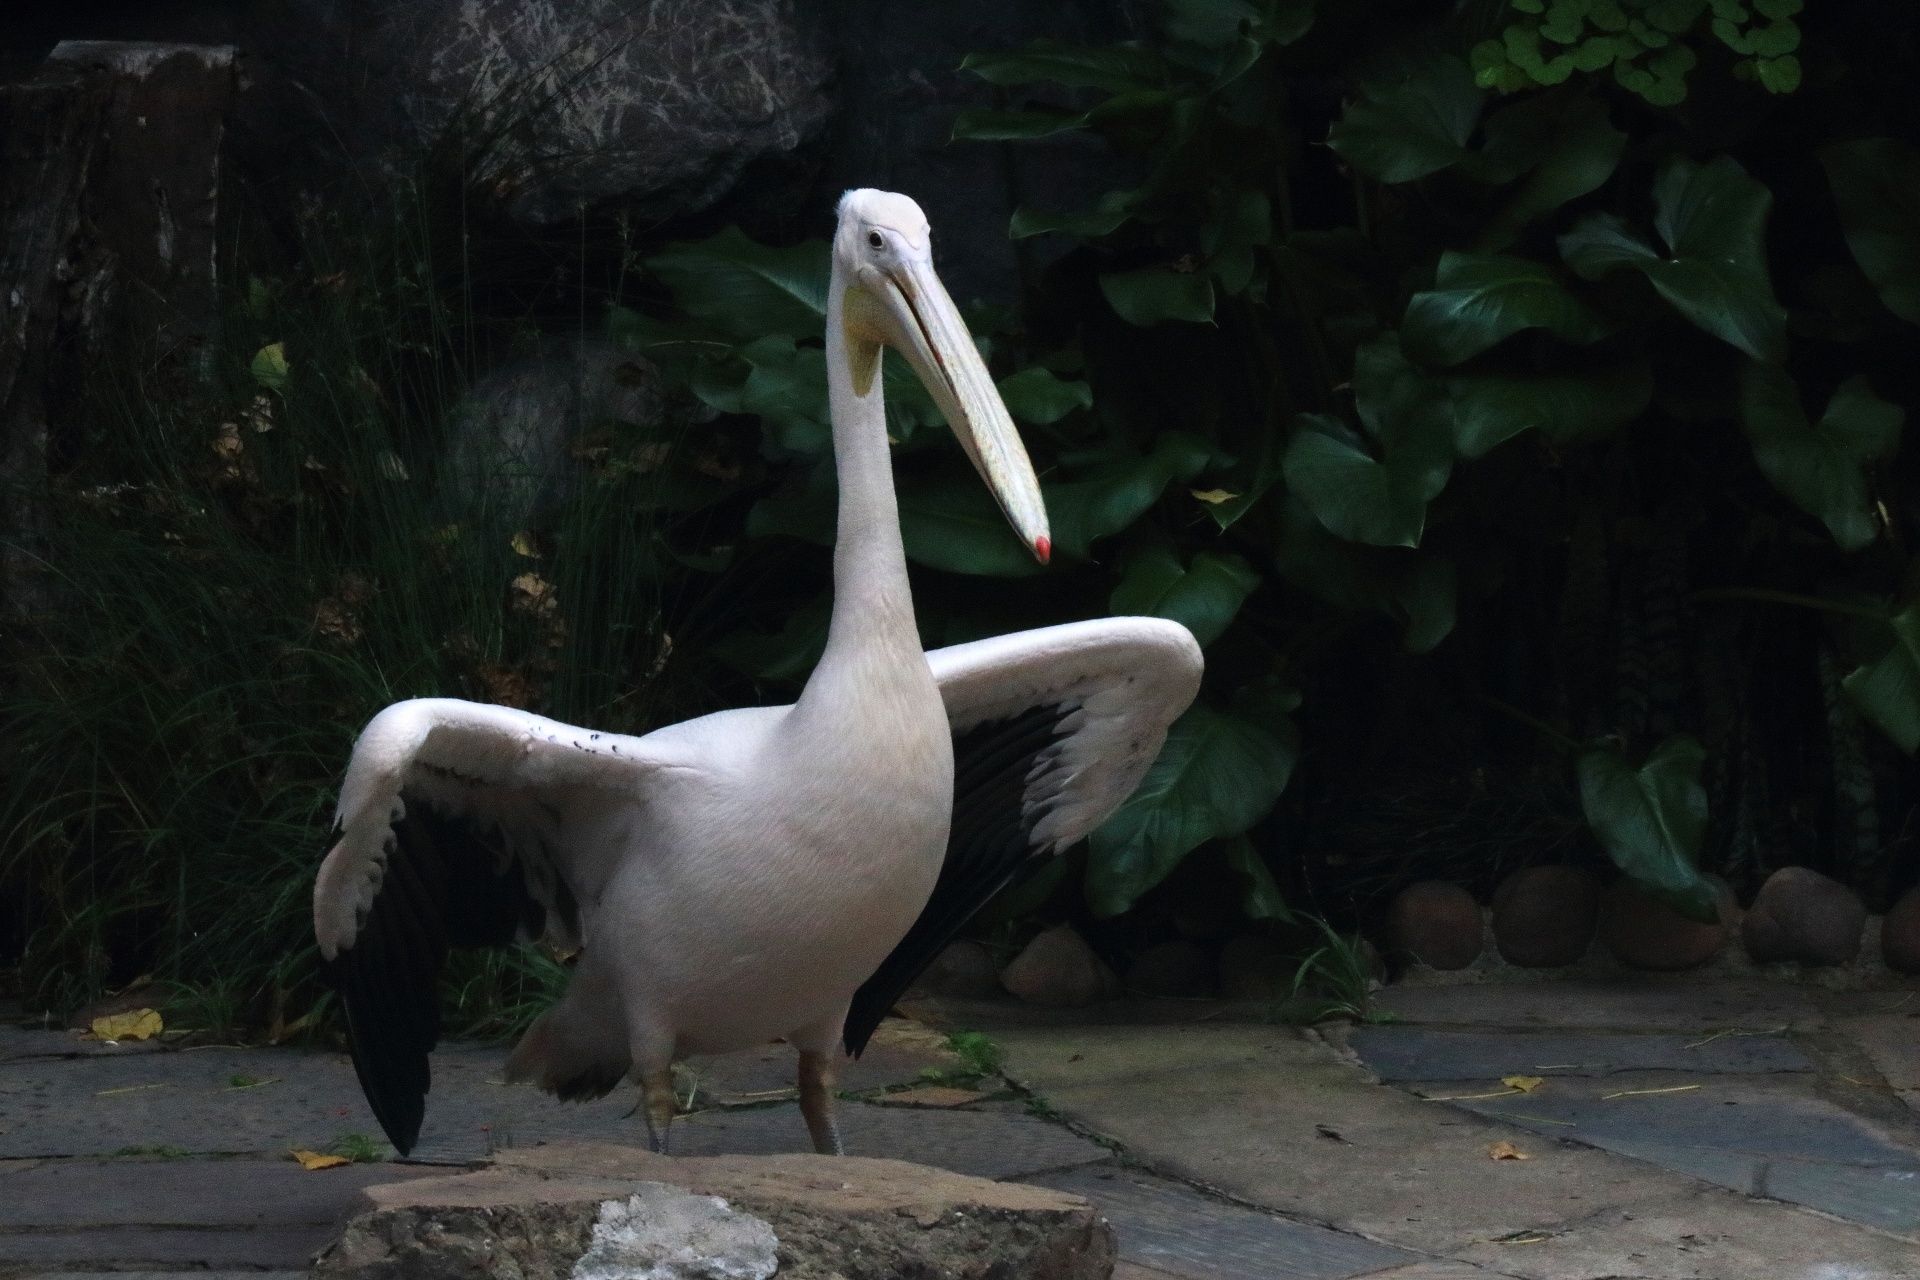 Large White Pelican & Raised Wings